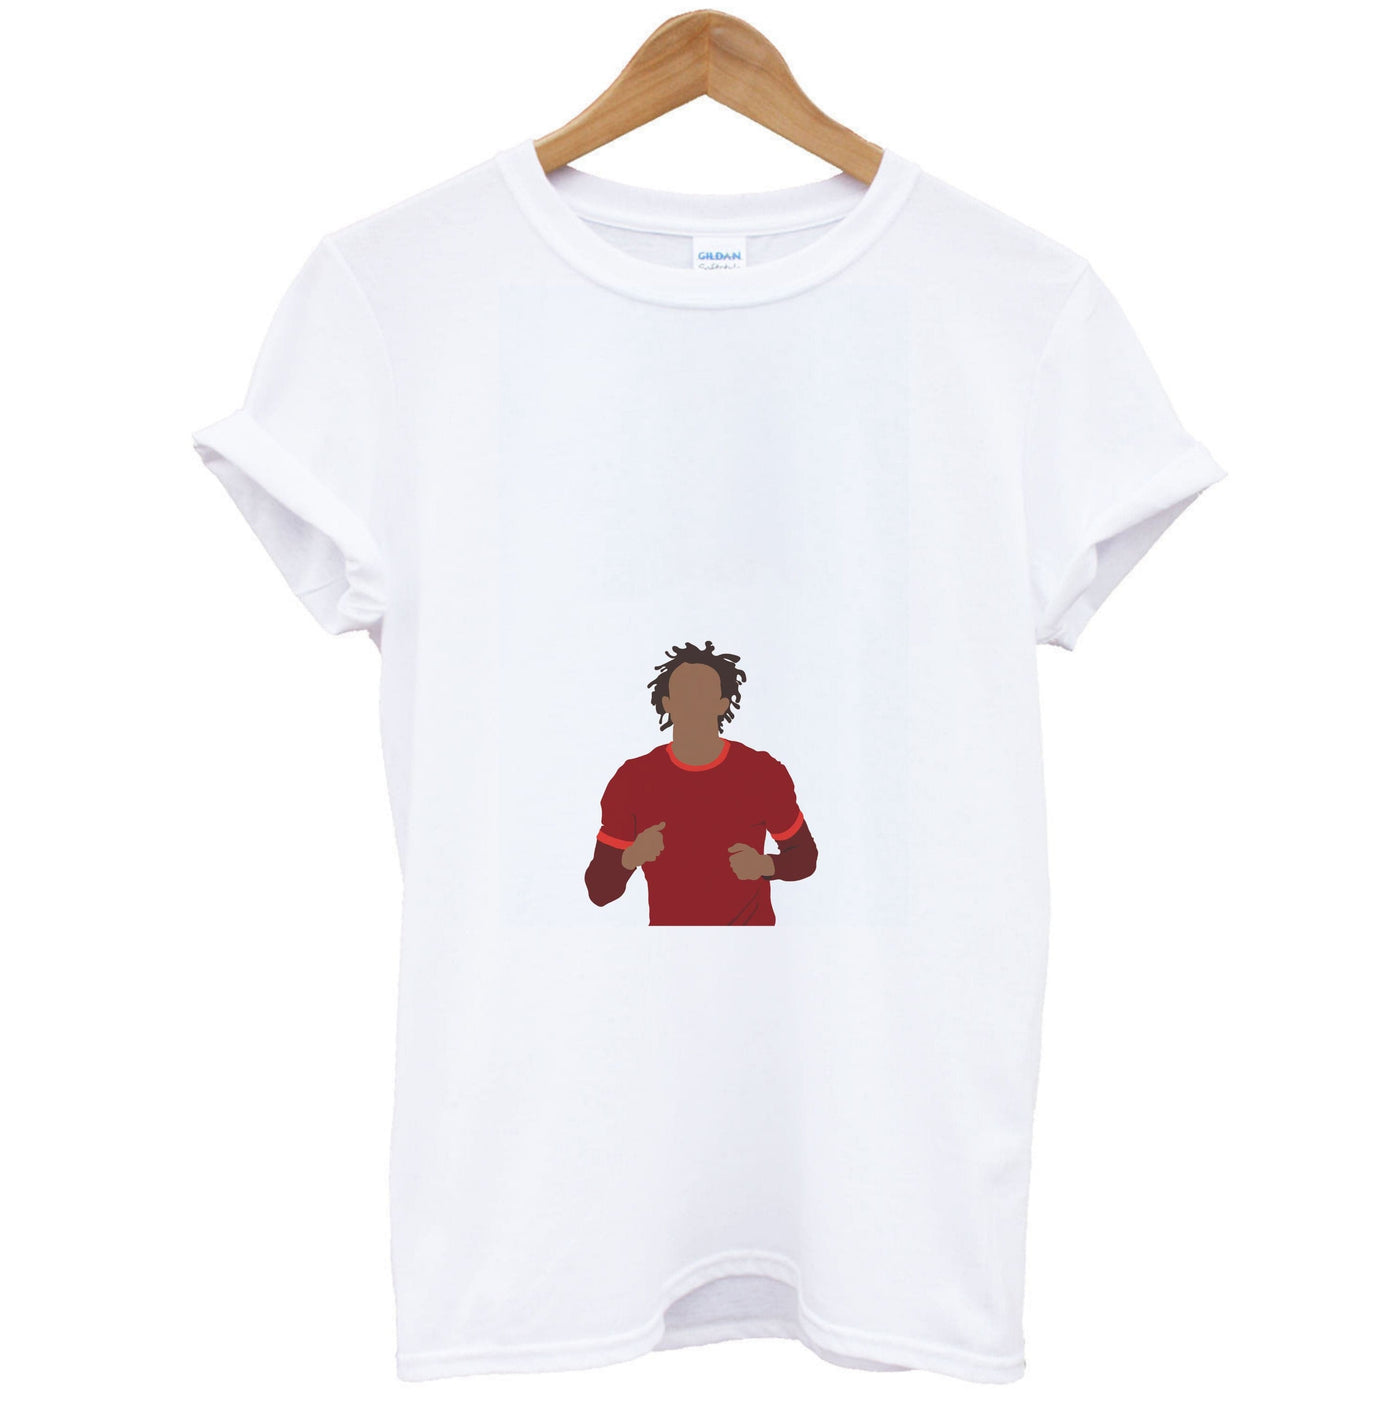 Trent Alexander-Arnold - Football T-Shirt